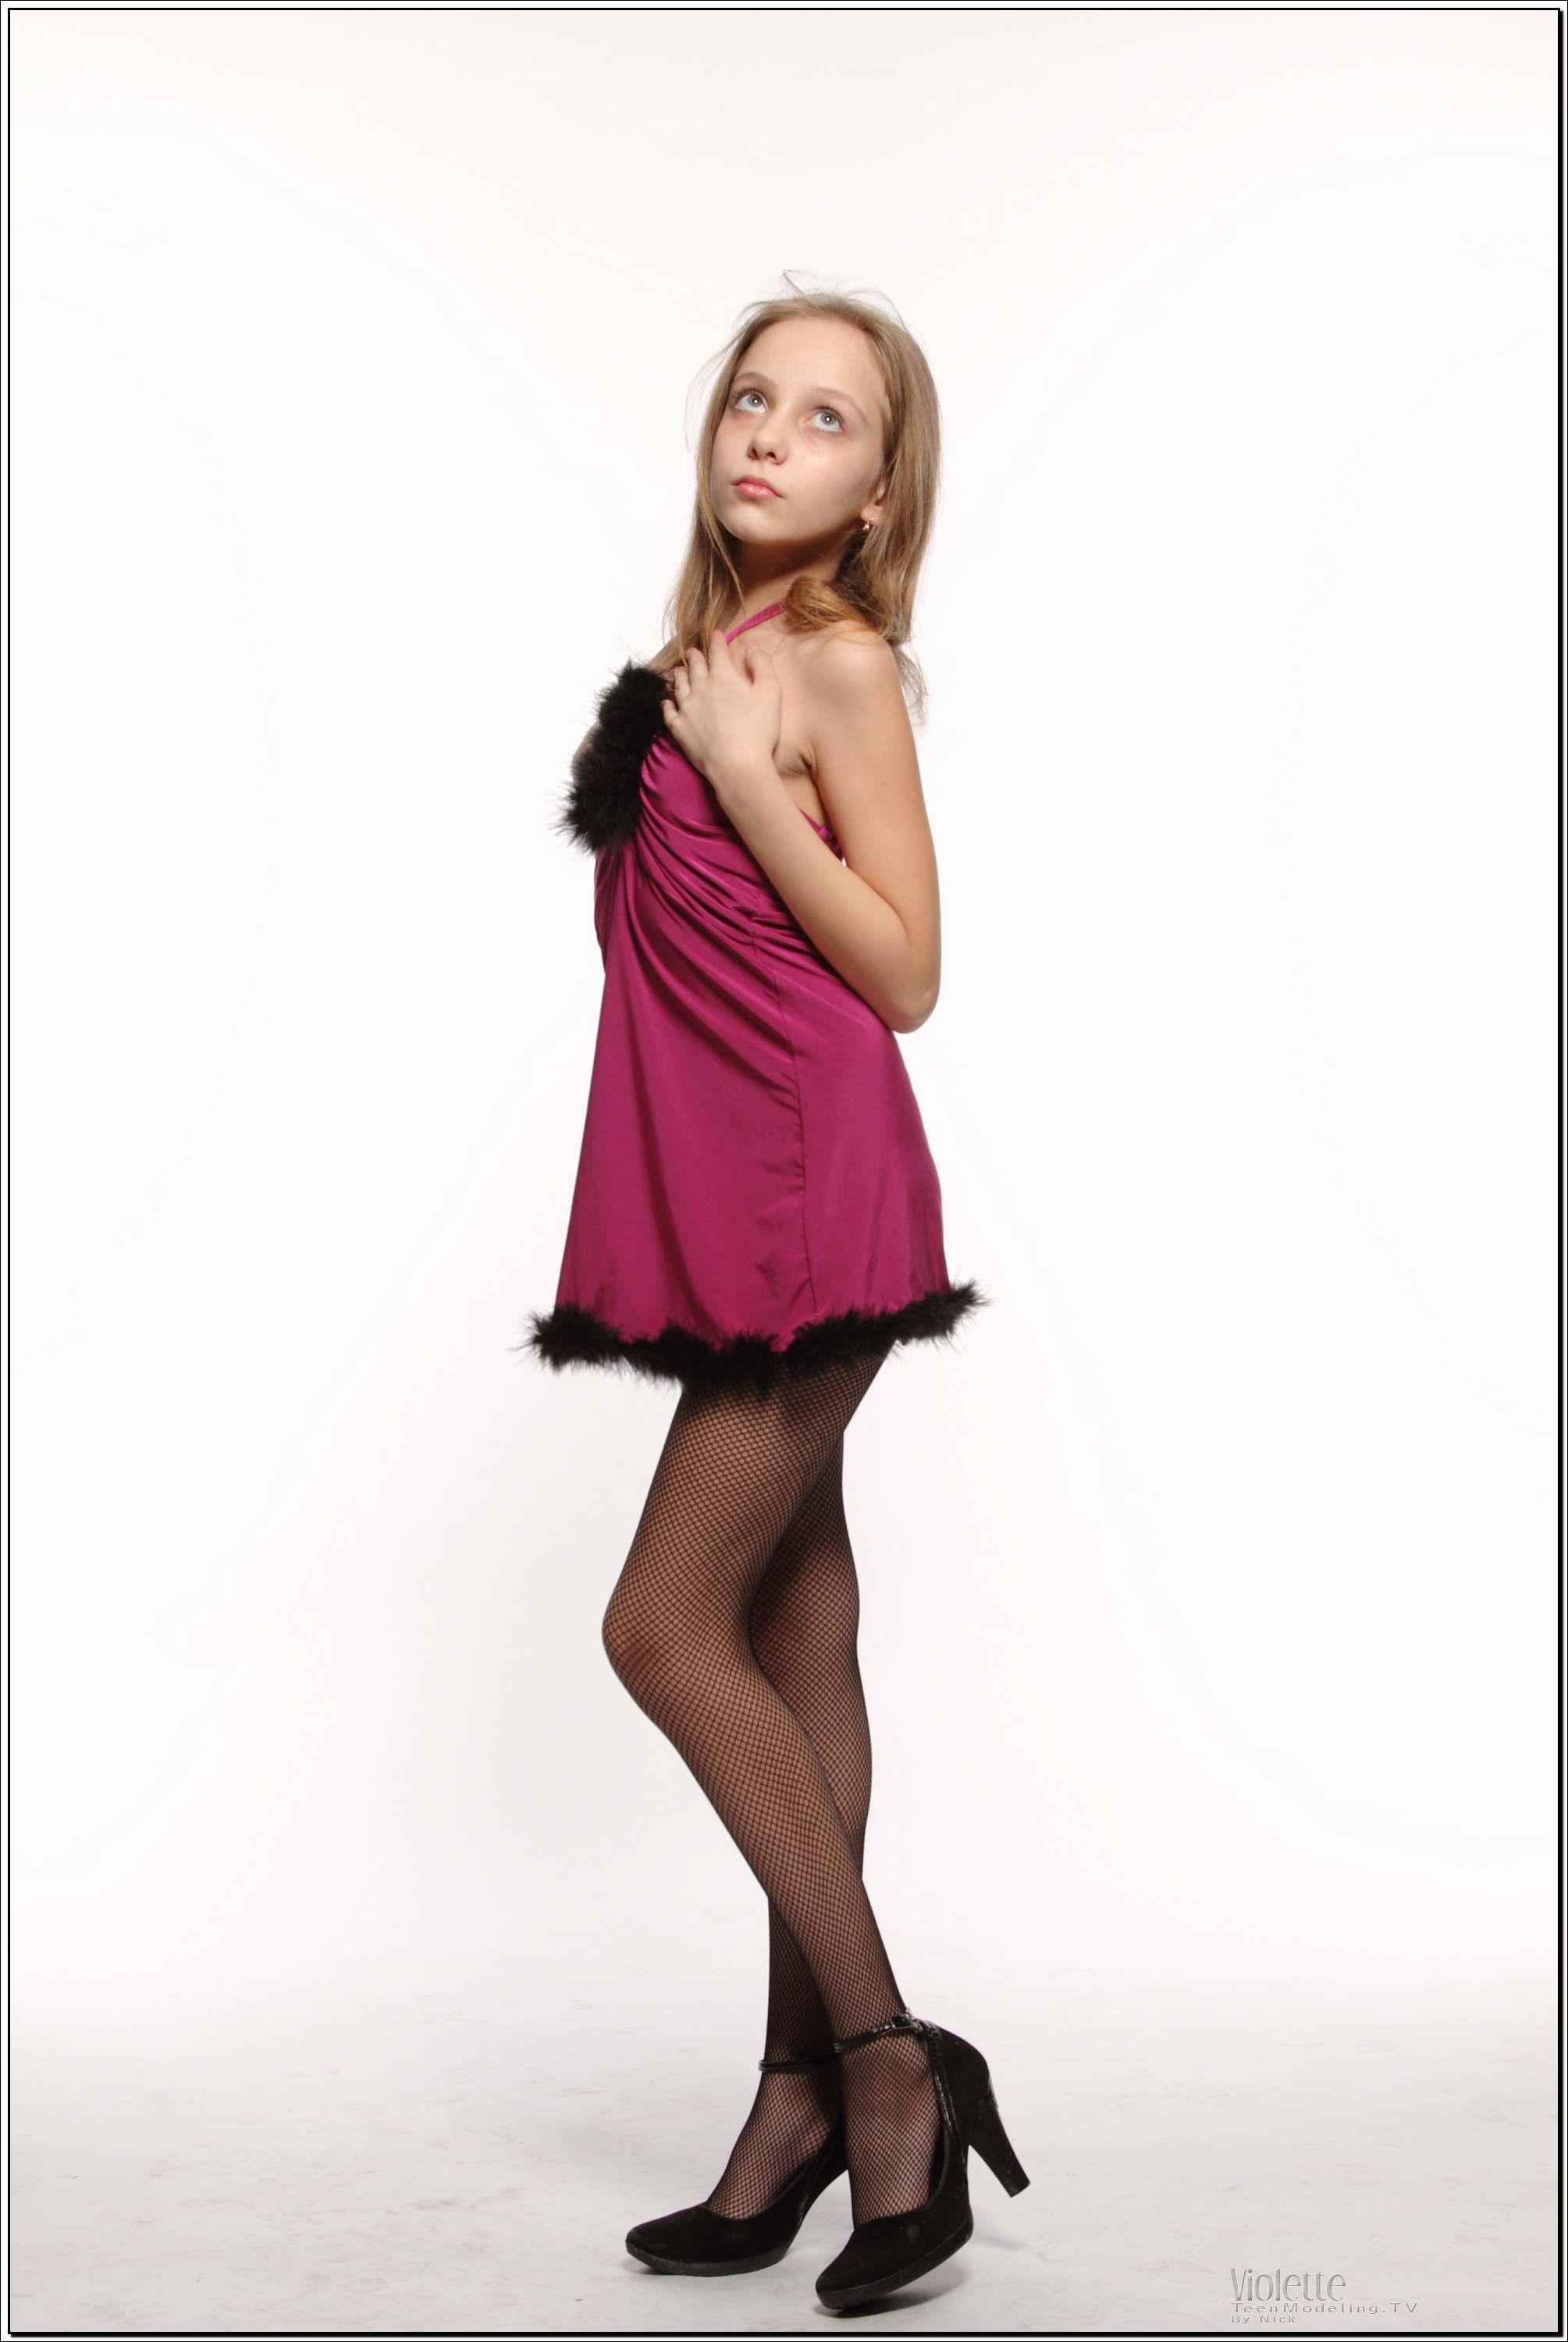 violette_model_pinkhalter_teenmodeling_tv_015.jpg